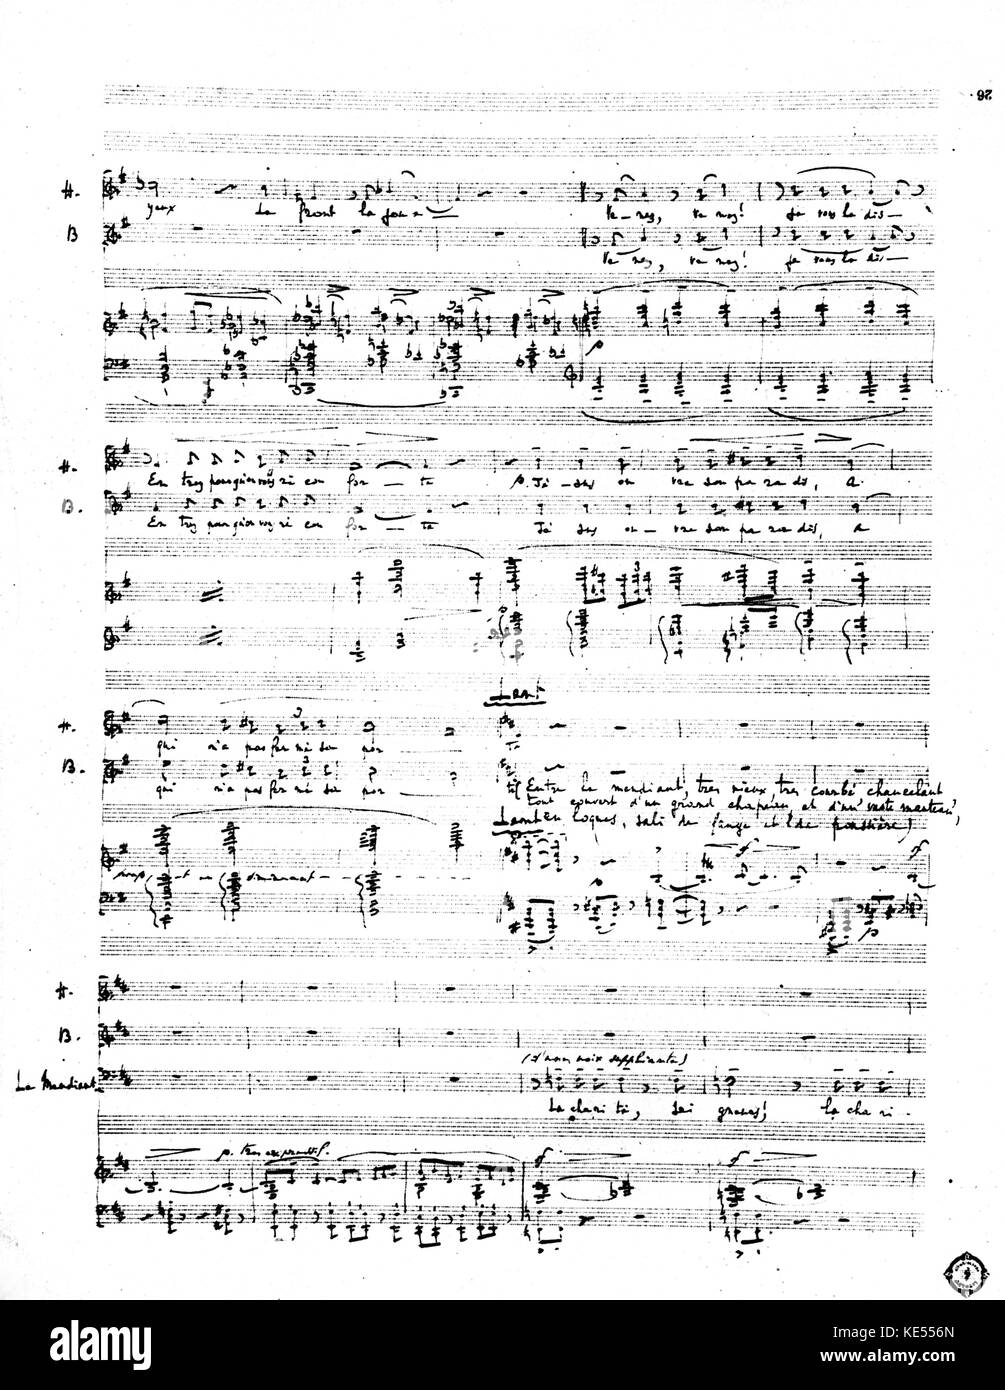 Claude Debussy 's opera 'Rodrigue et Chimène'. Scritto a mano partitura manoscritta dell opera incompiuta, 1891. Il compositore francese, 22 agosto 1862 - 25 Marzo 1918. Foto Stock